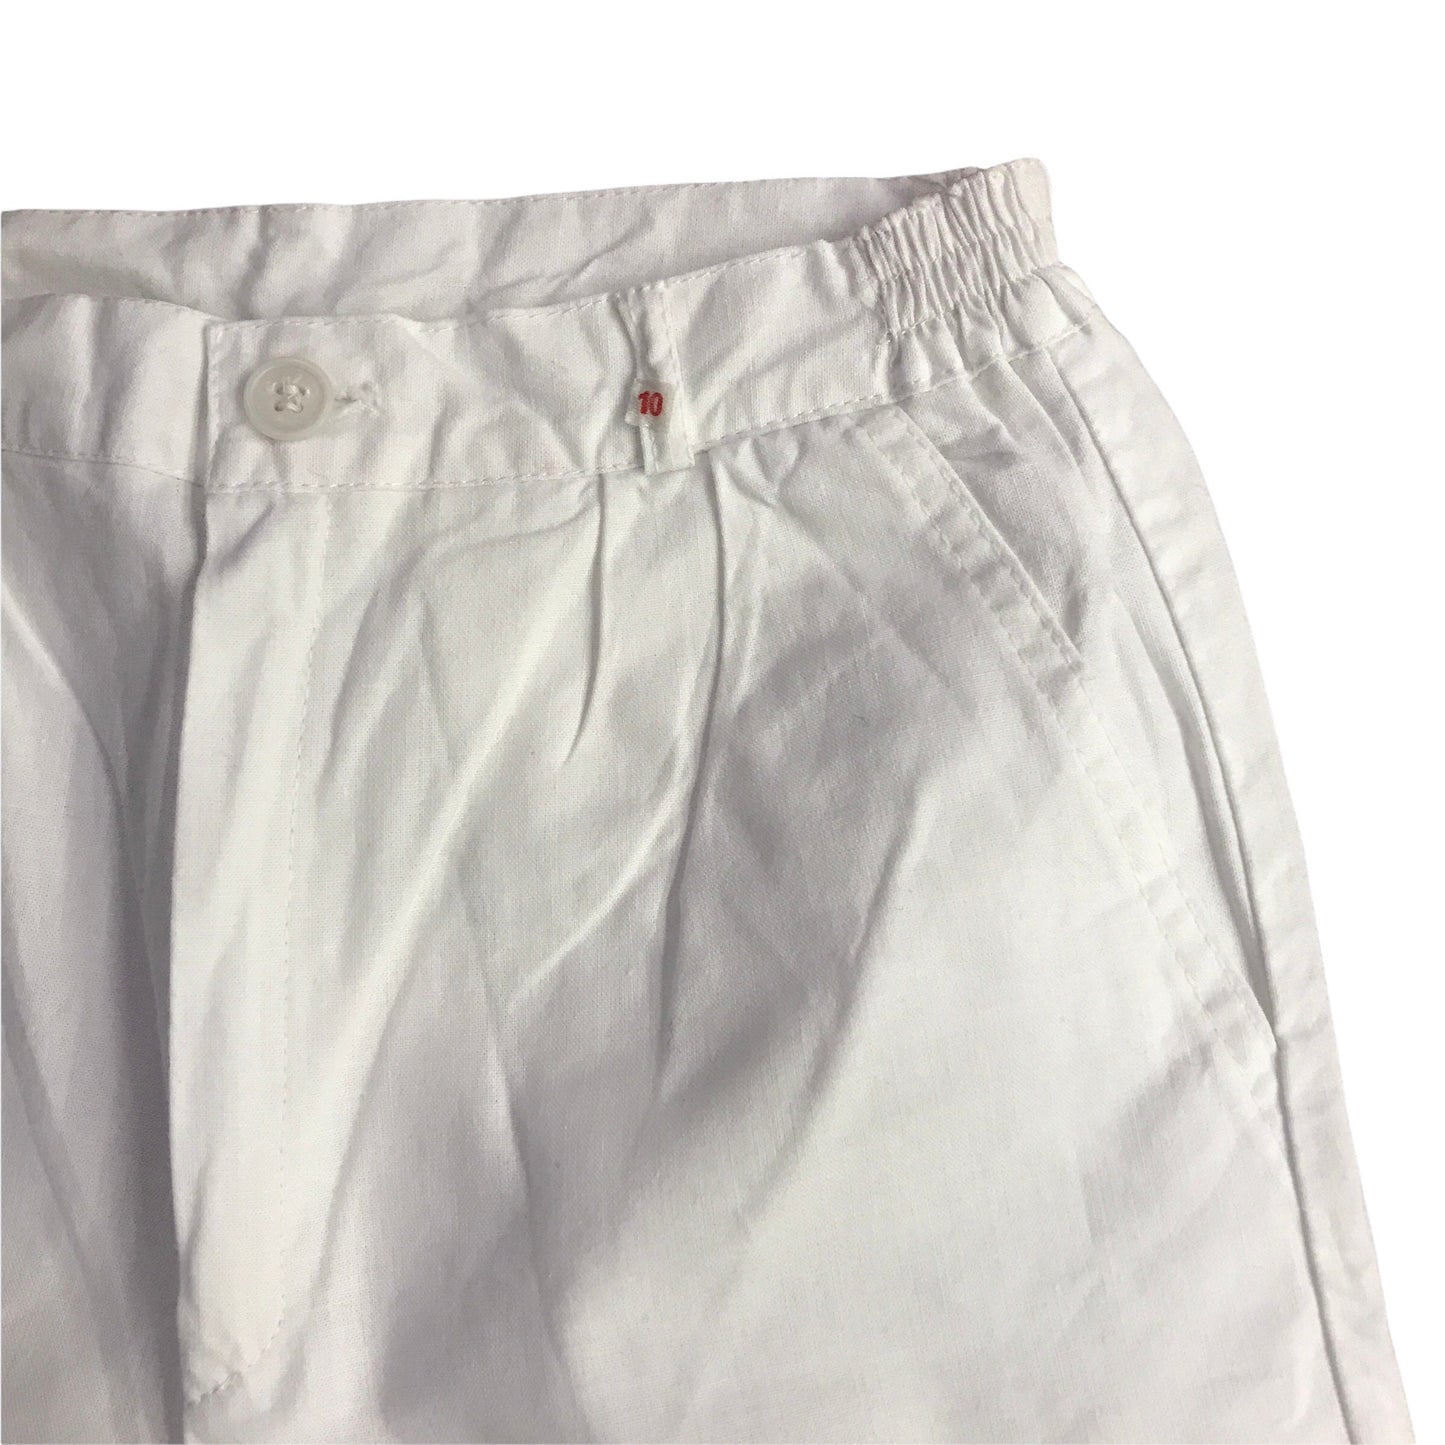 Vintage 1970's White Shorts 8-10Y